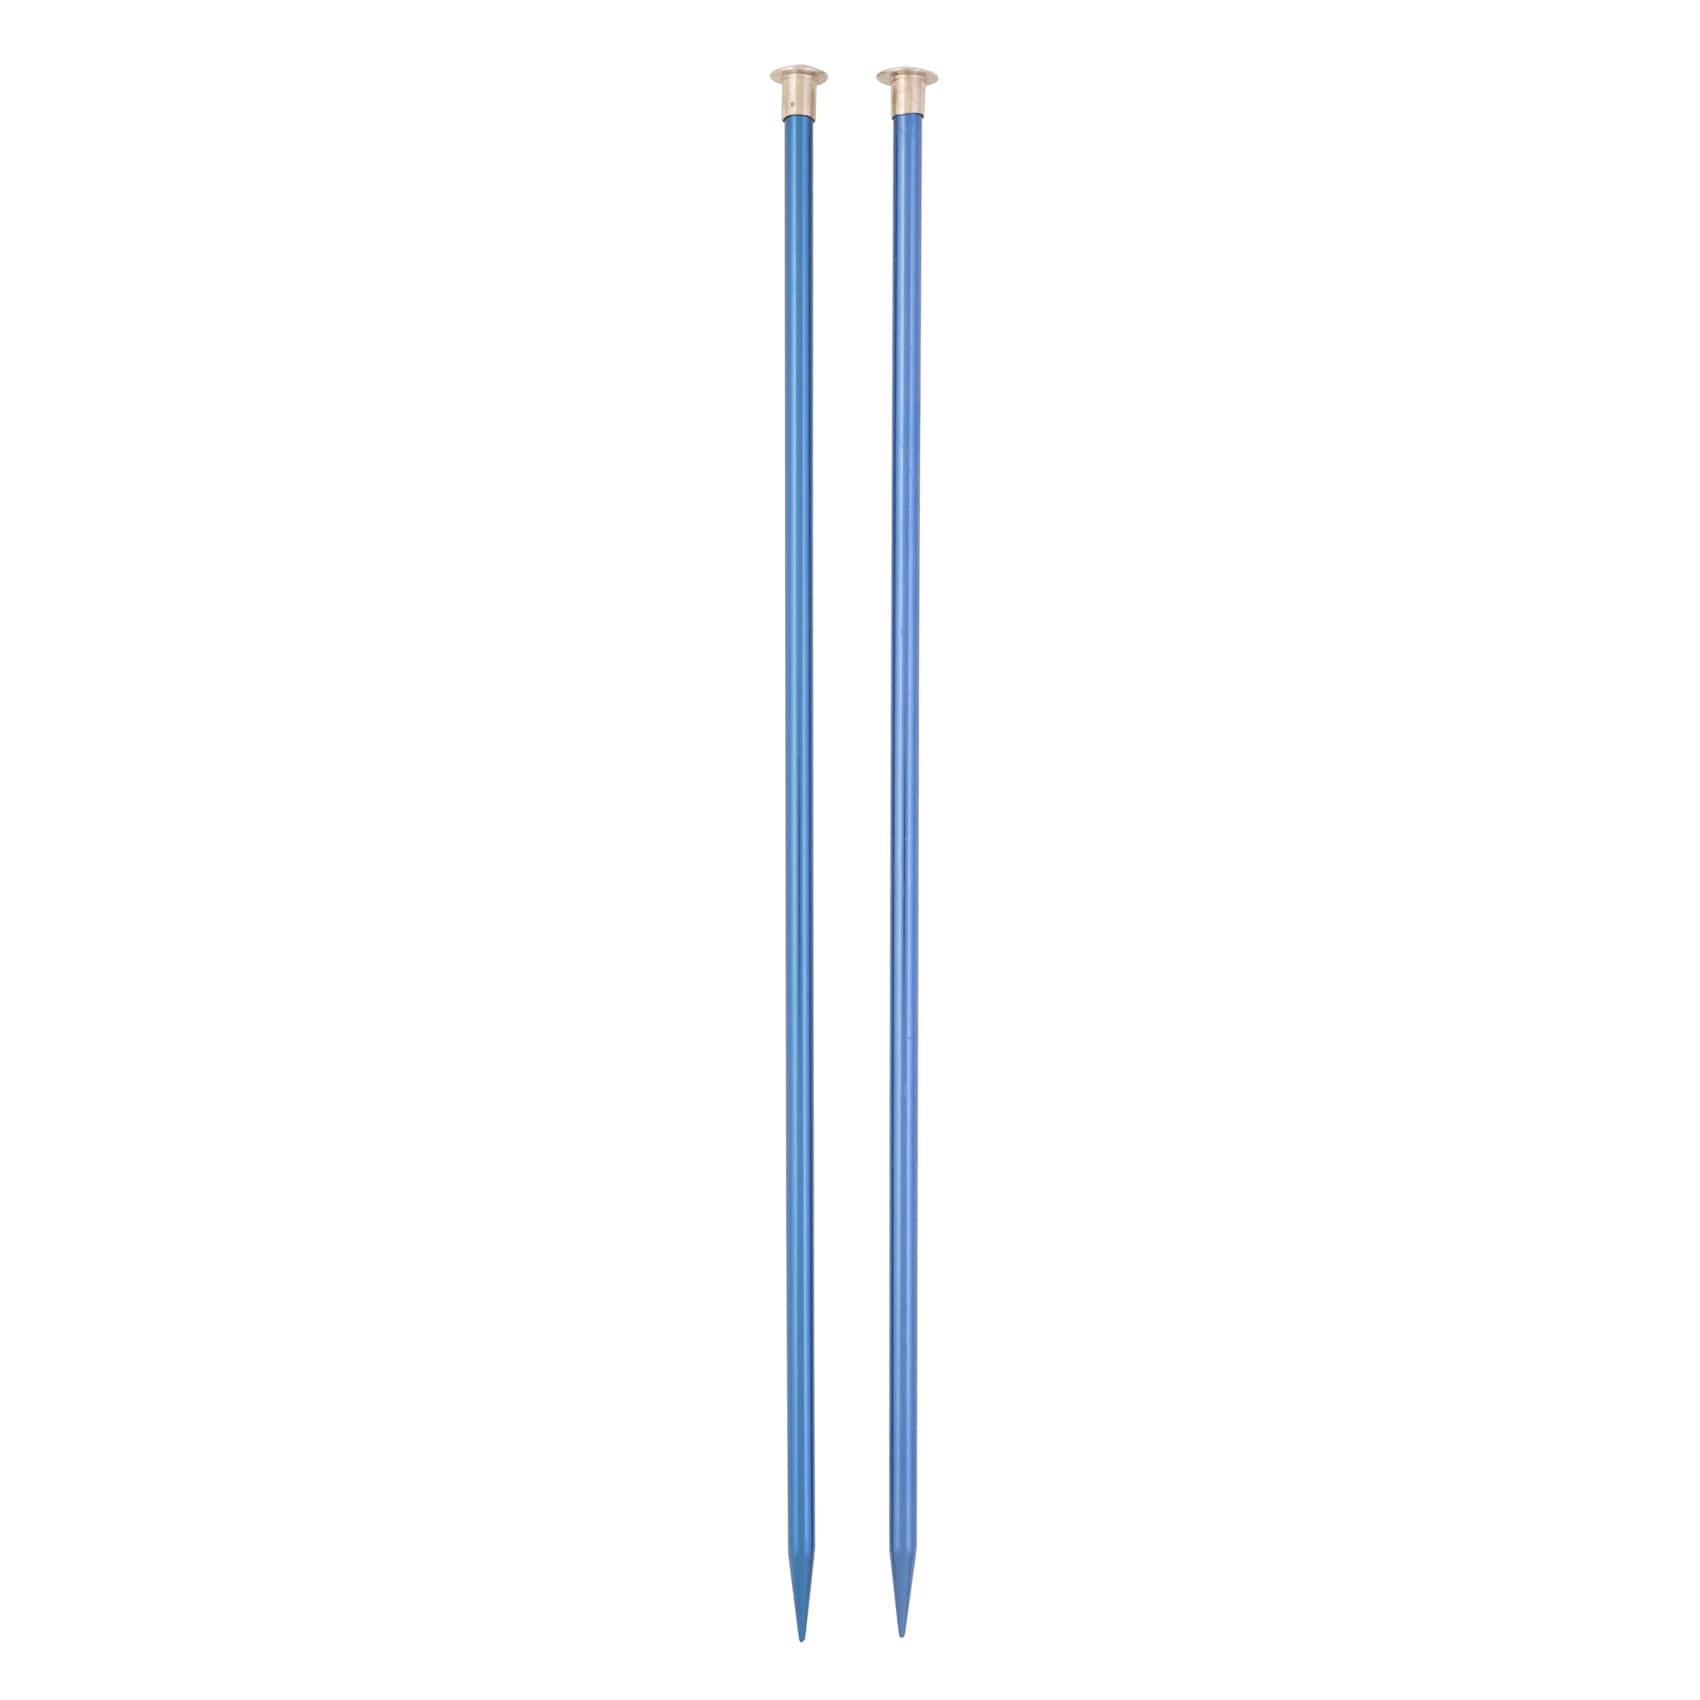 Boye Single Point Aluminum Knitting Needles 14 Size 10/6mm